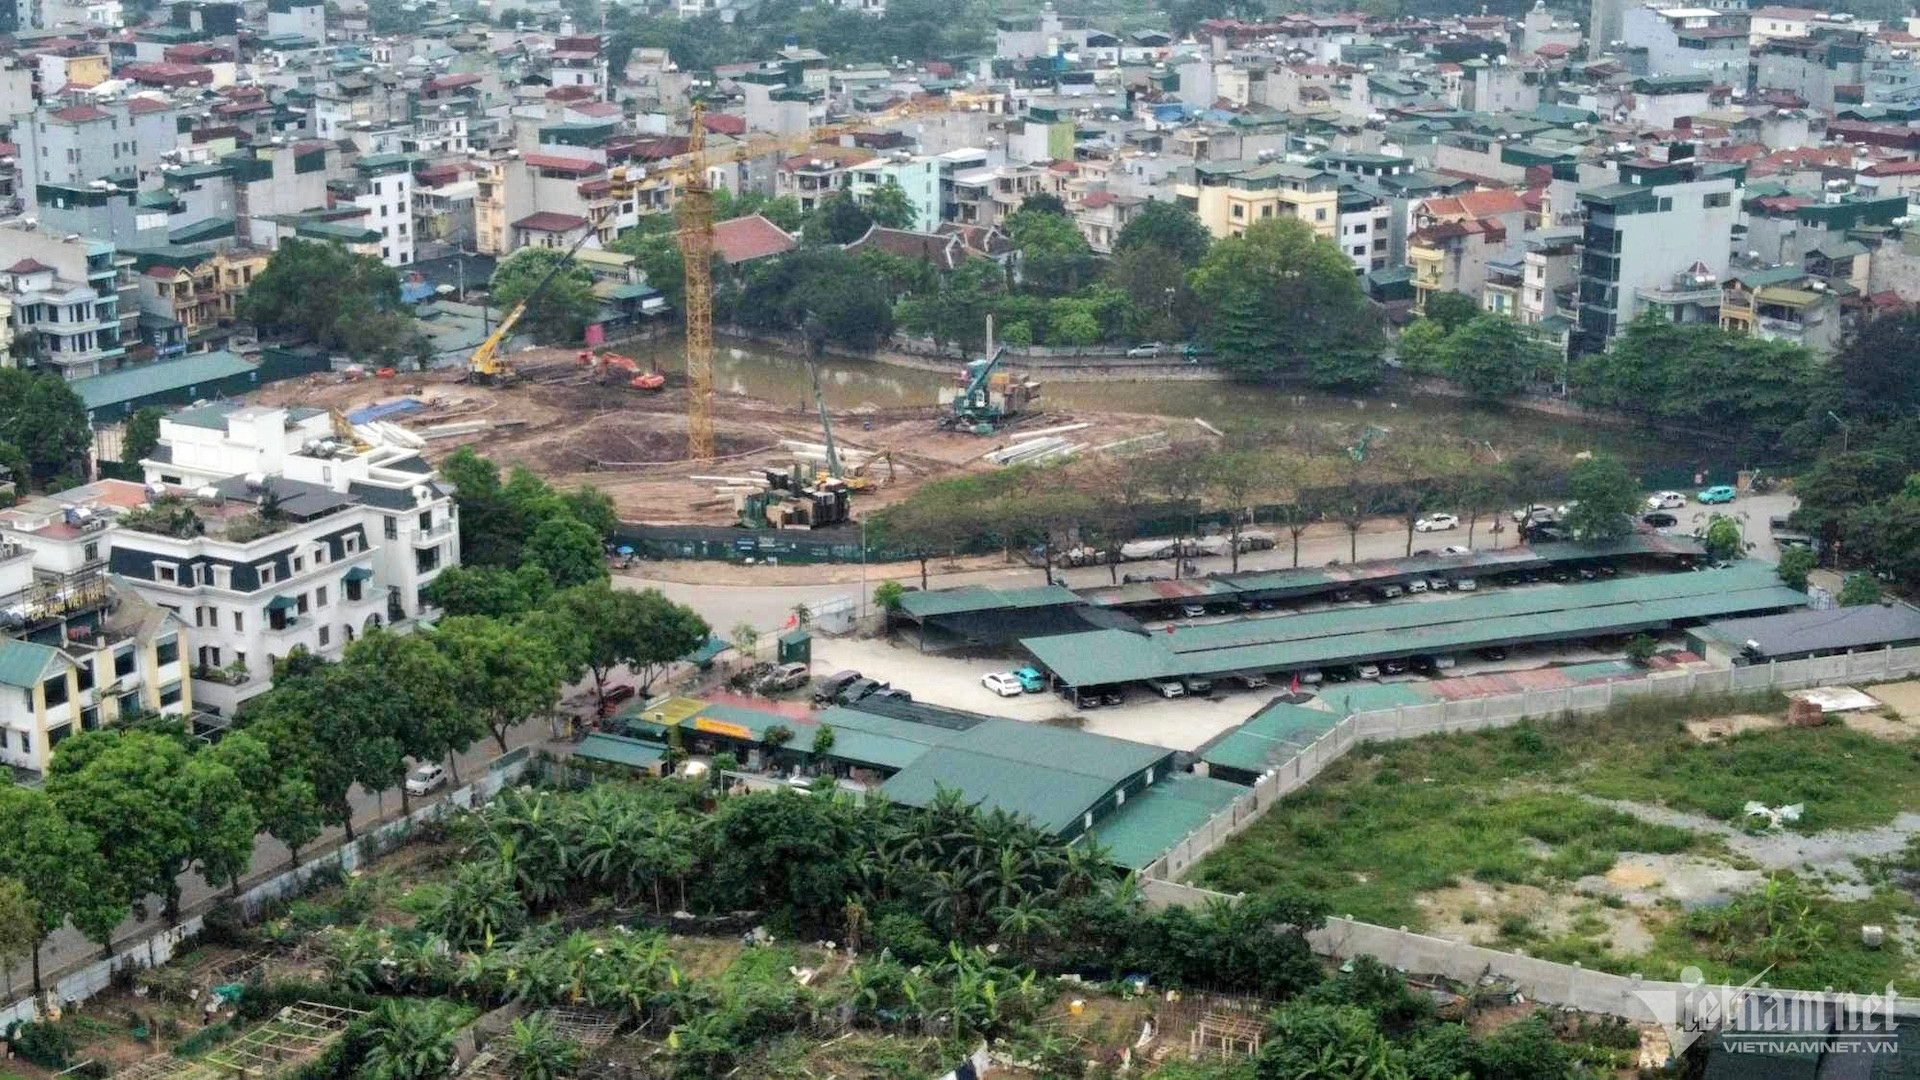 Ghi nhận trên địa bàn phường Hoàng Liệt, thời gian gần đây một số lô đất quy hoạch trường học đang được triển khai xây dựng.